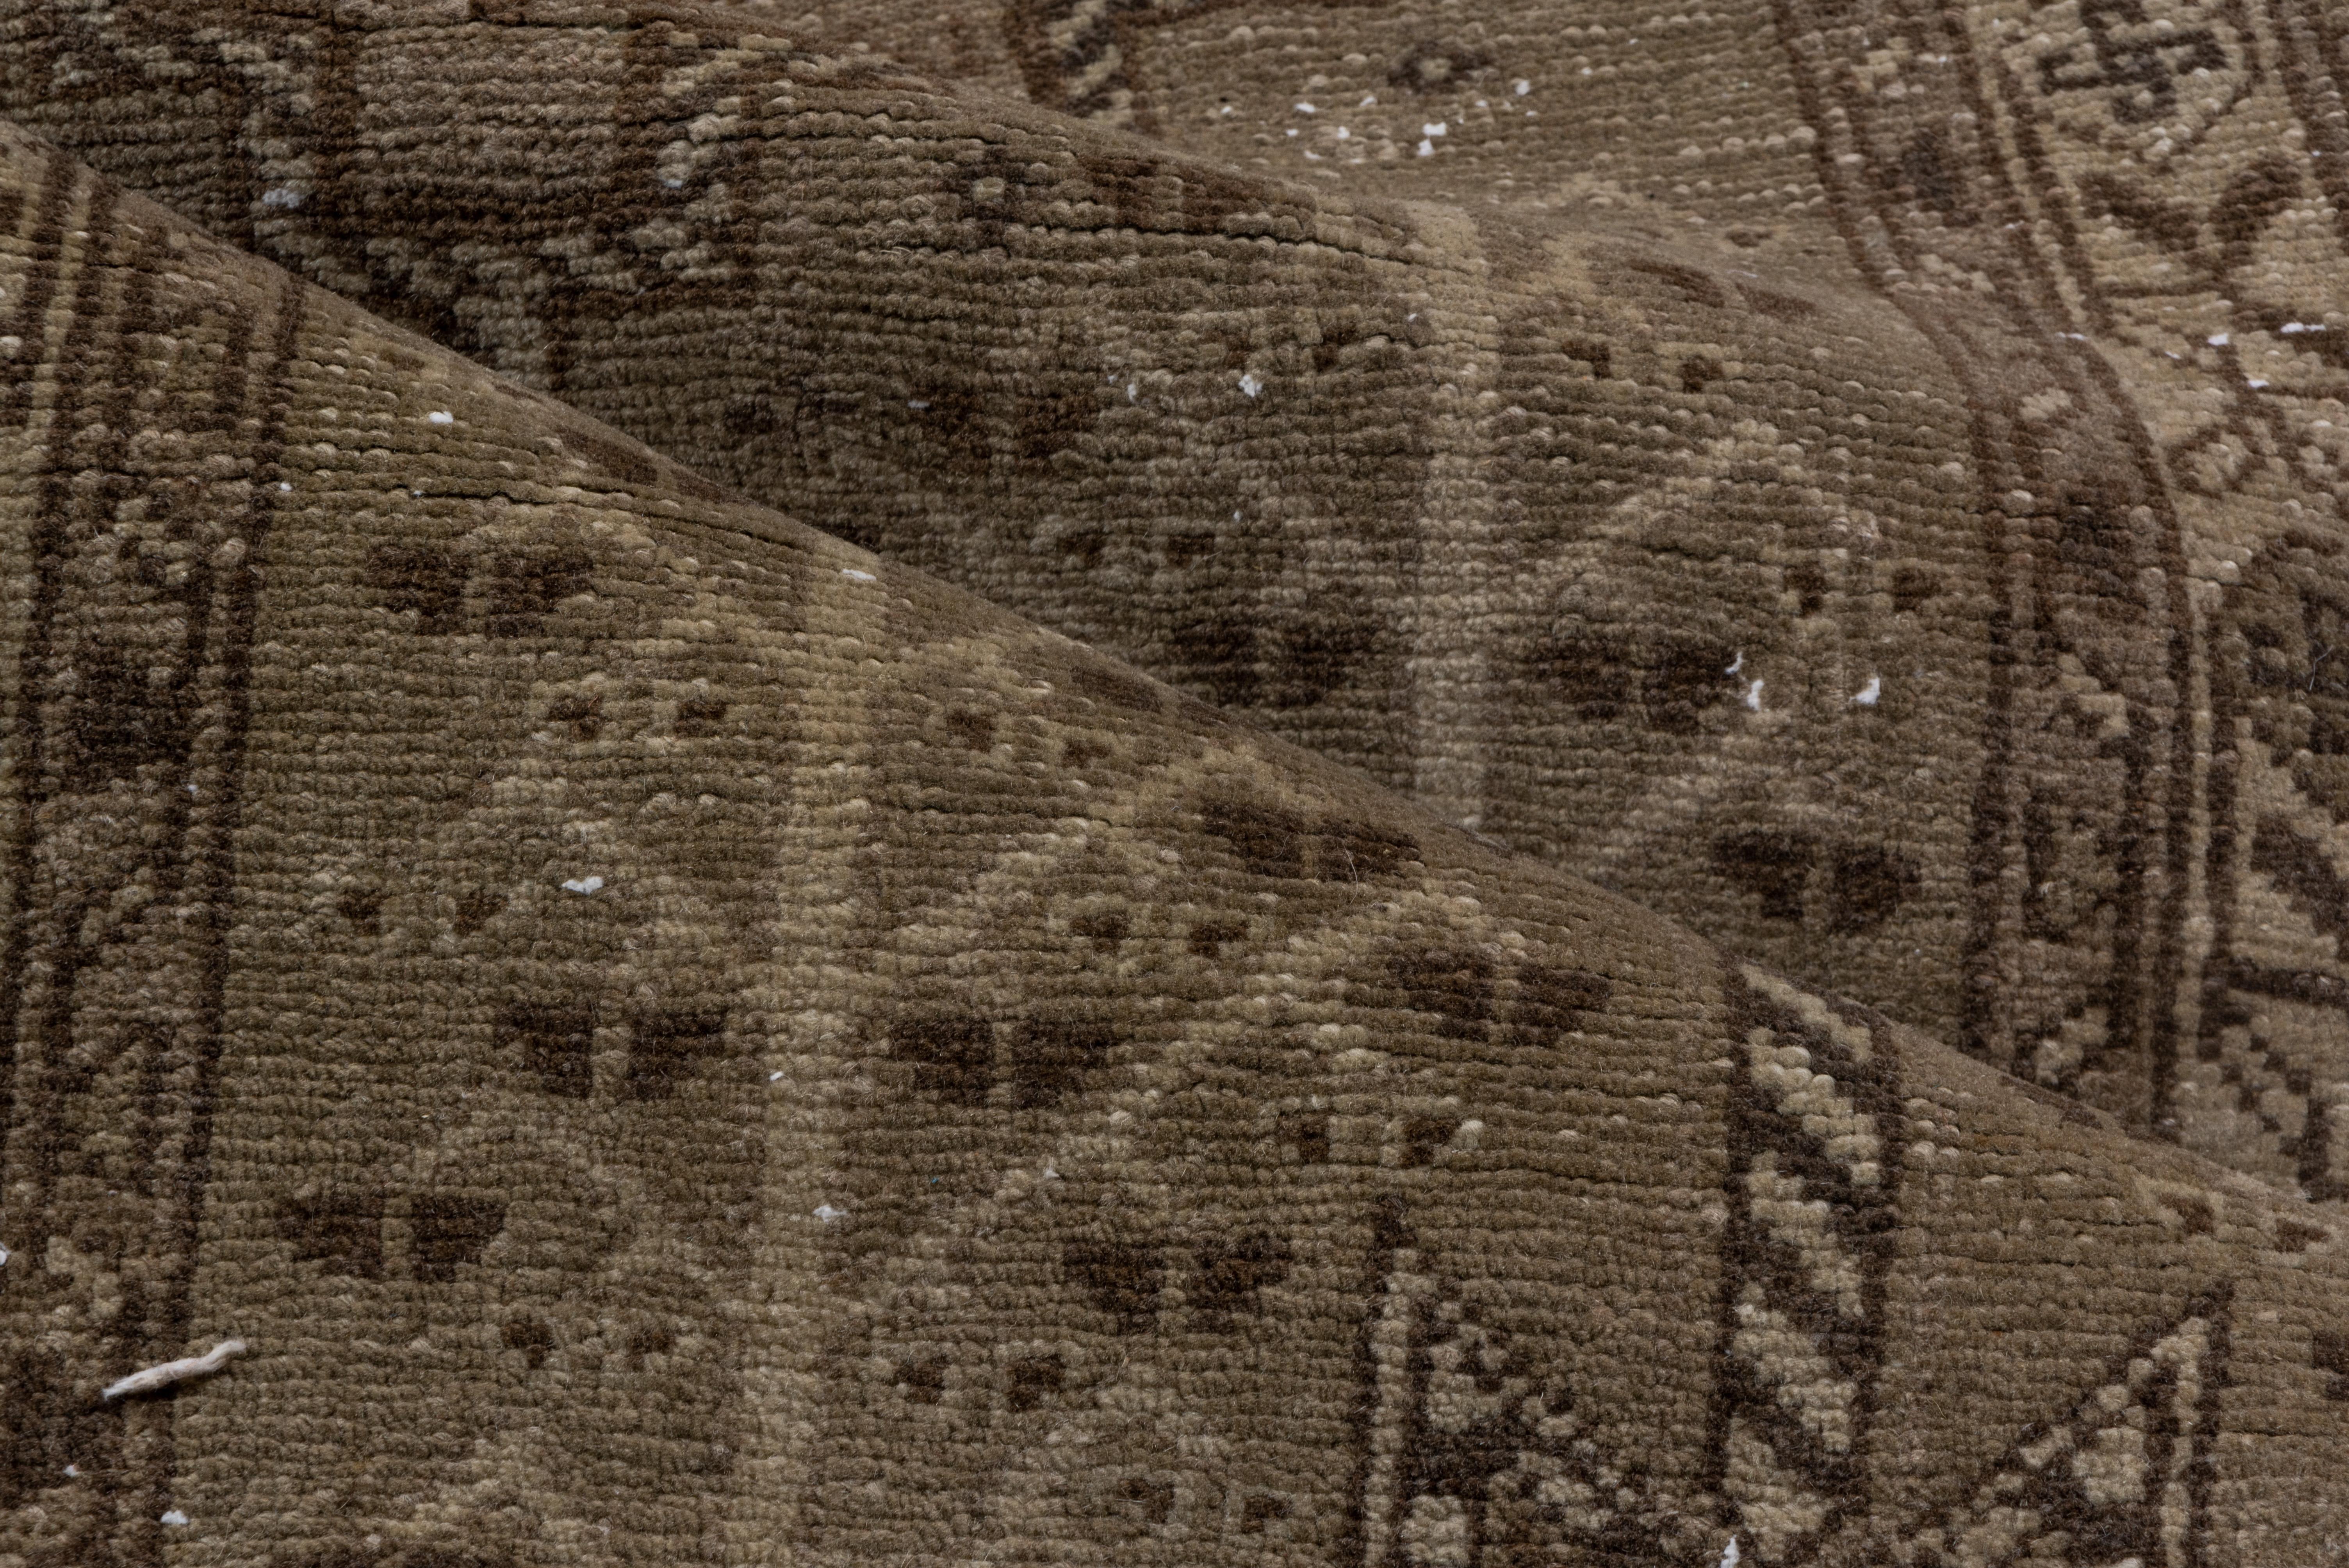 Dieser nordwestpersische Aserbaidschan-Läufer zeigt ein Stabmedaillon aus fünf stufenförmig angeordneten Medaillons in Brauntönen auf einem braunen Feld, das gleichmäßig Blumen mit vier symmetrischen Rosetten einschließt. Blüten mit gebrochenen